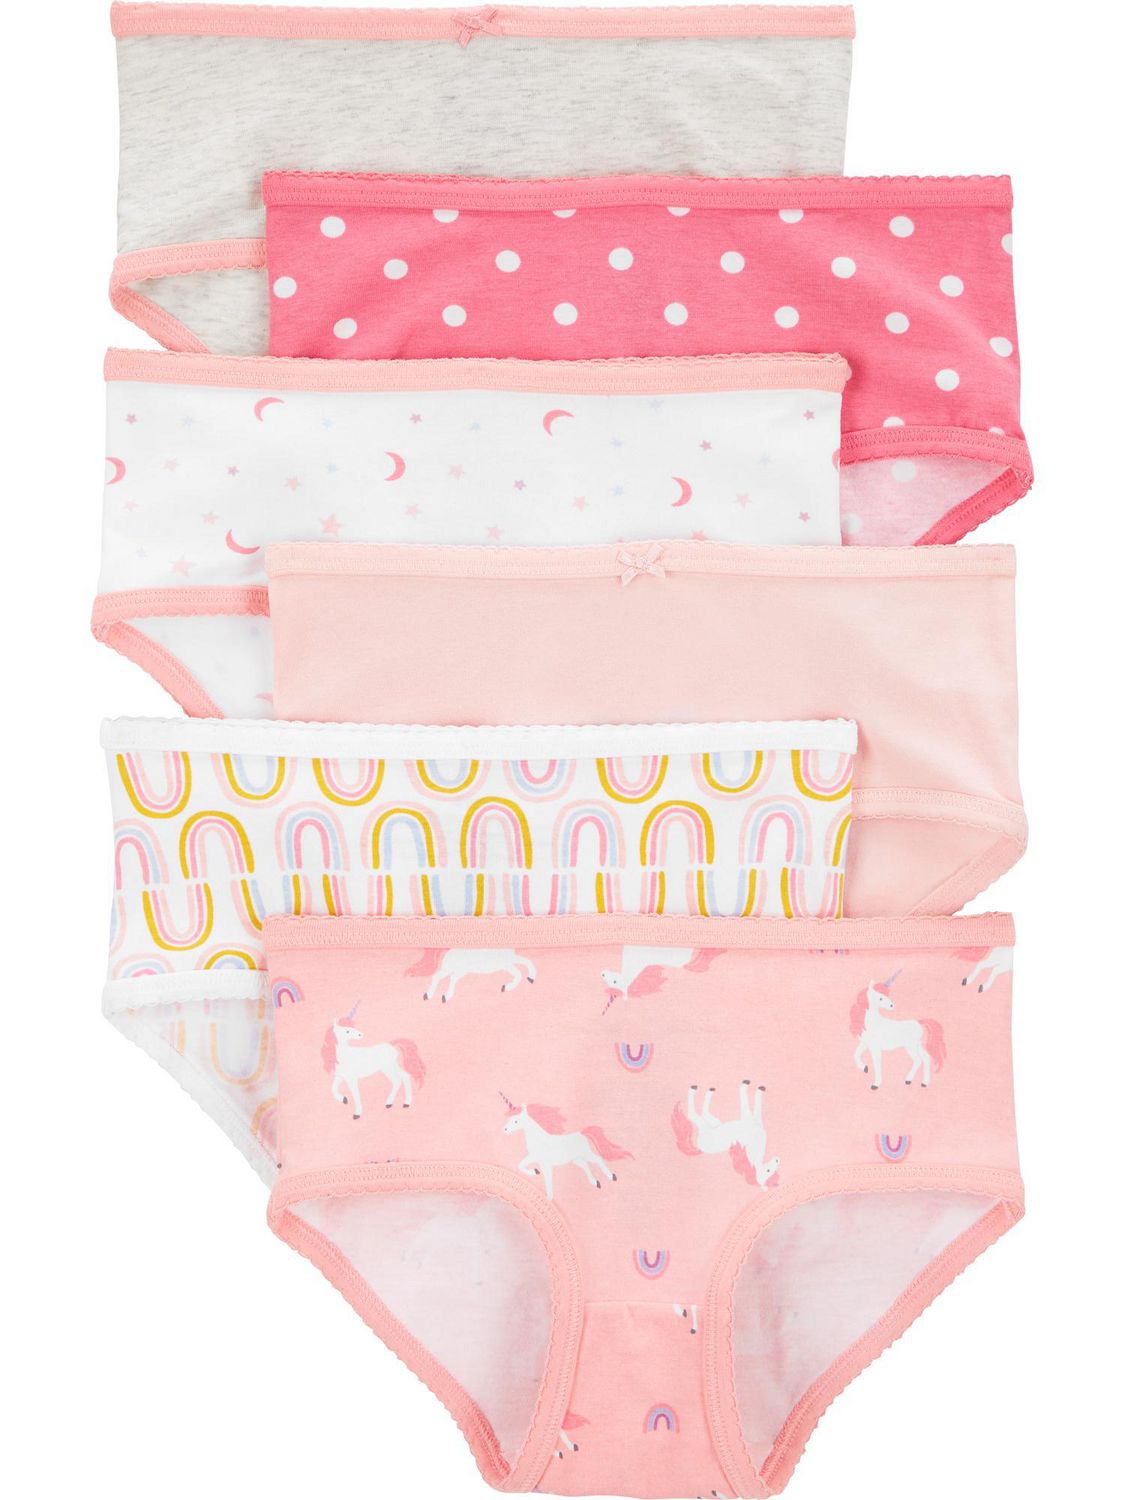 Carter's Child of Mine Toddler Girls' Underwear - Unicorn, 2T-5T 